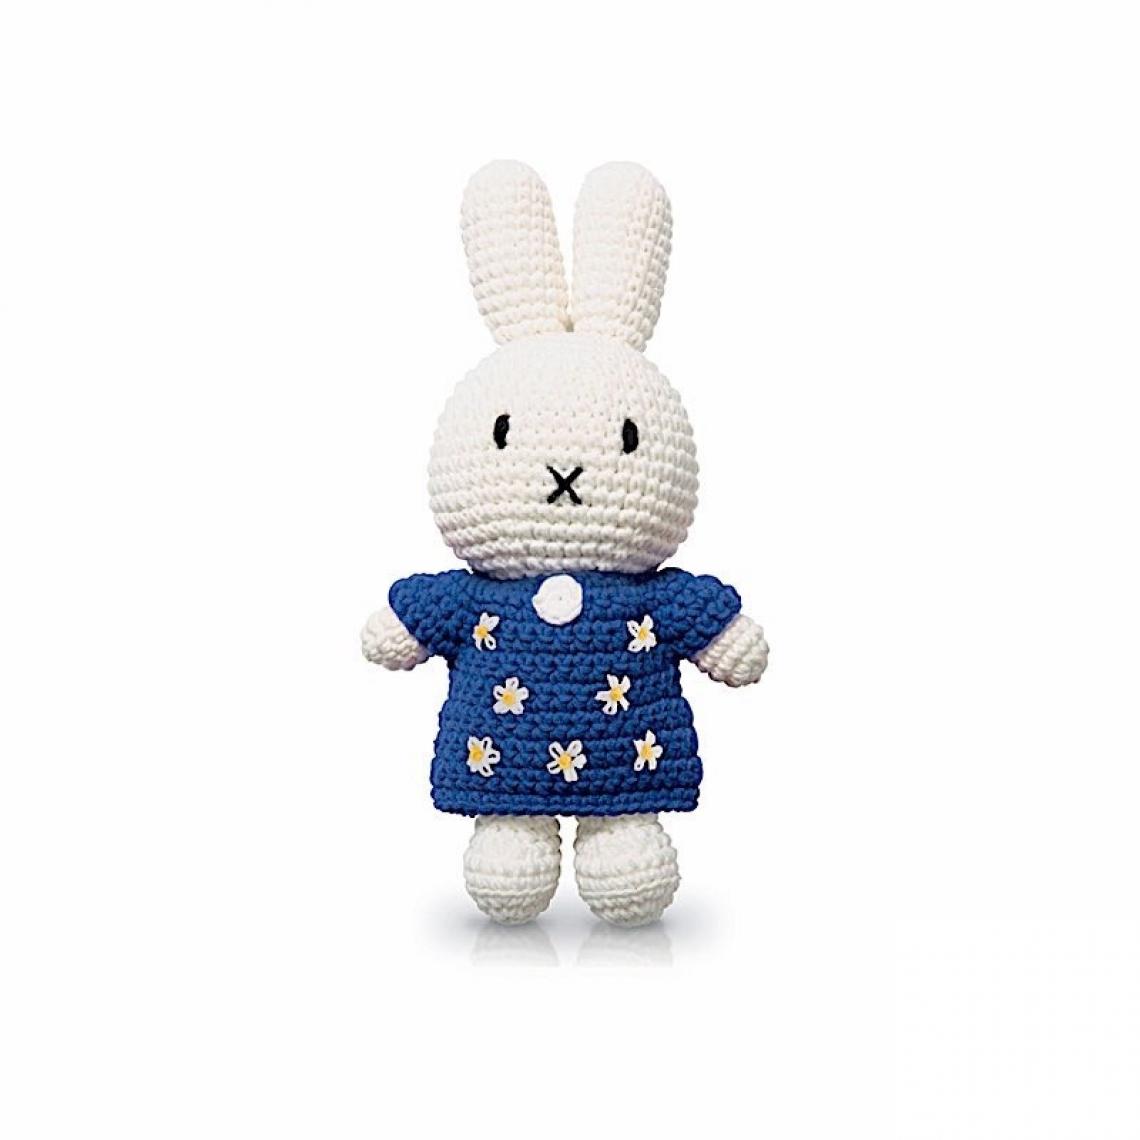 Ac-Deco - Peluche en crochet - Miffy fleurs - L 10 x l 5 x H 25 cm - Bleu marine - Doudous